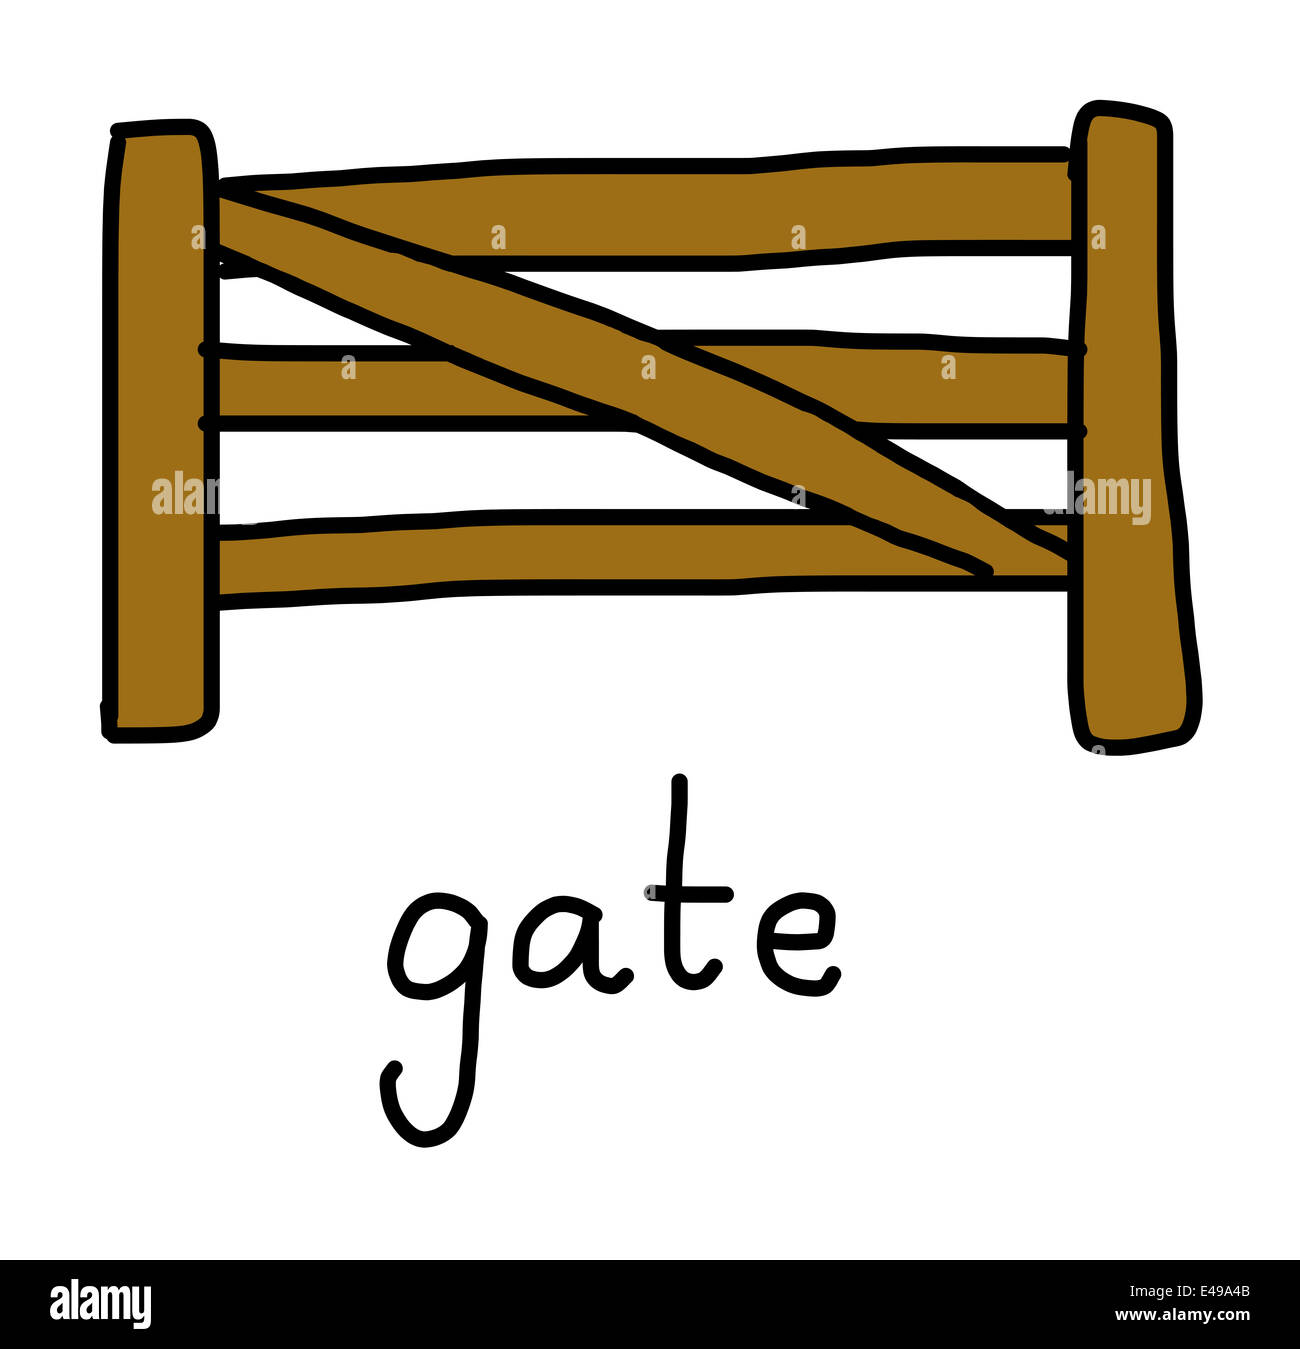 Illustrazione di alfabeto parole - gate Foto Stock